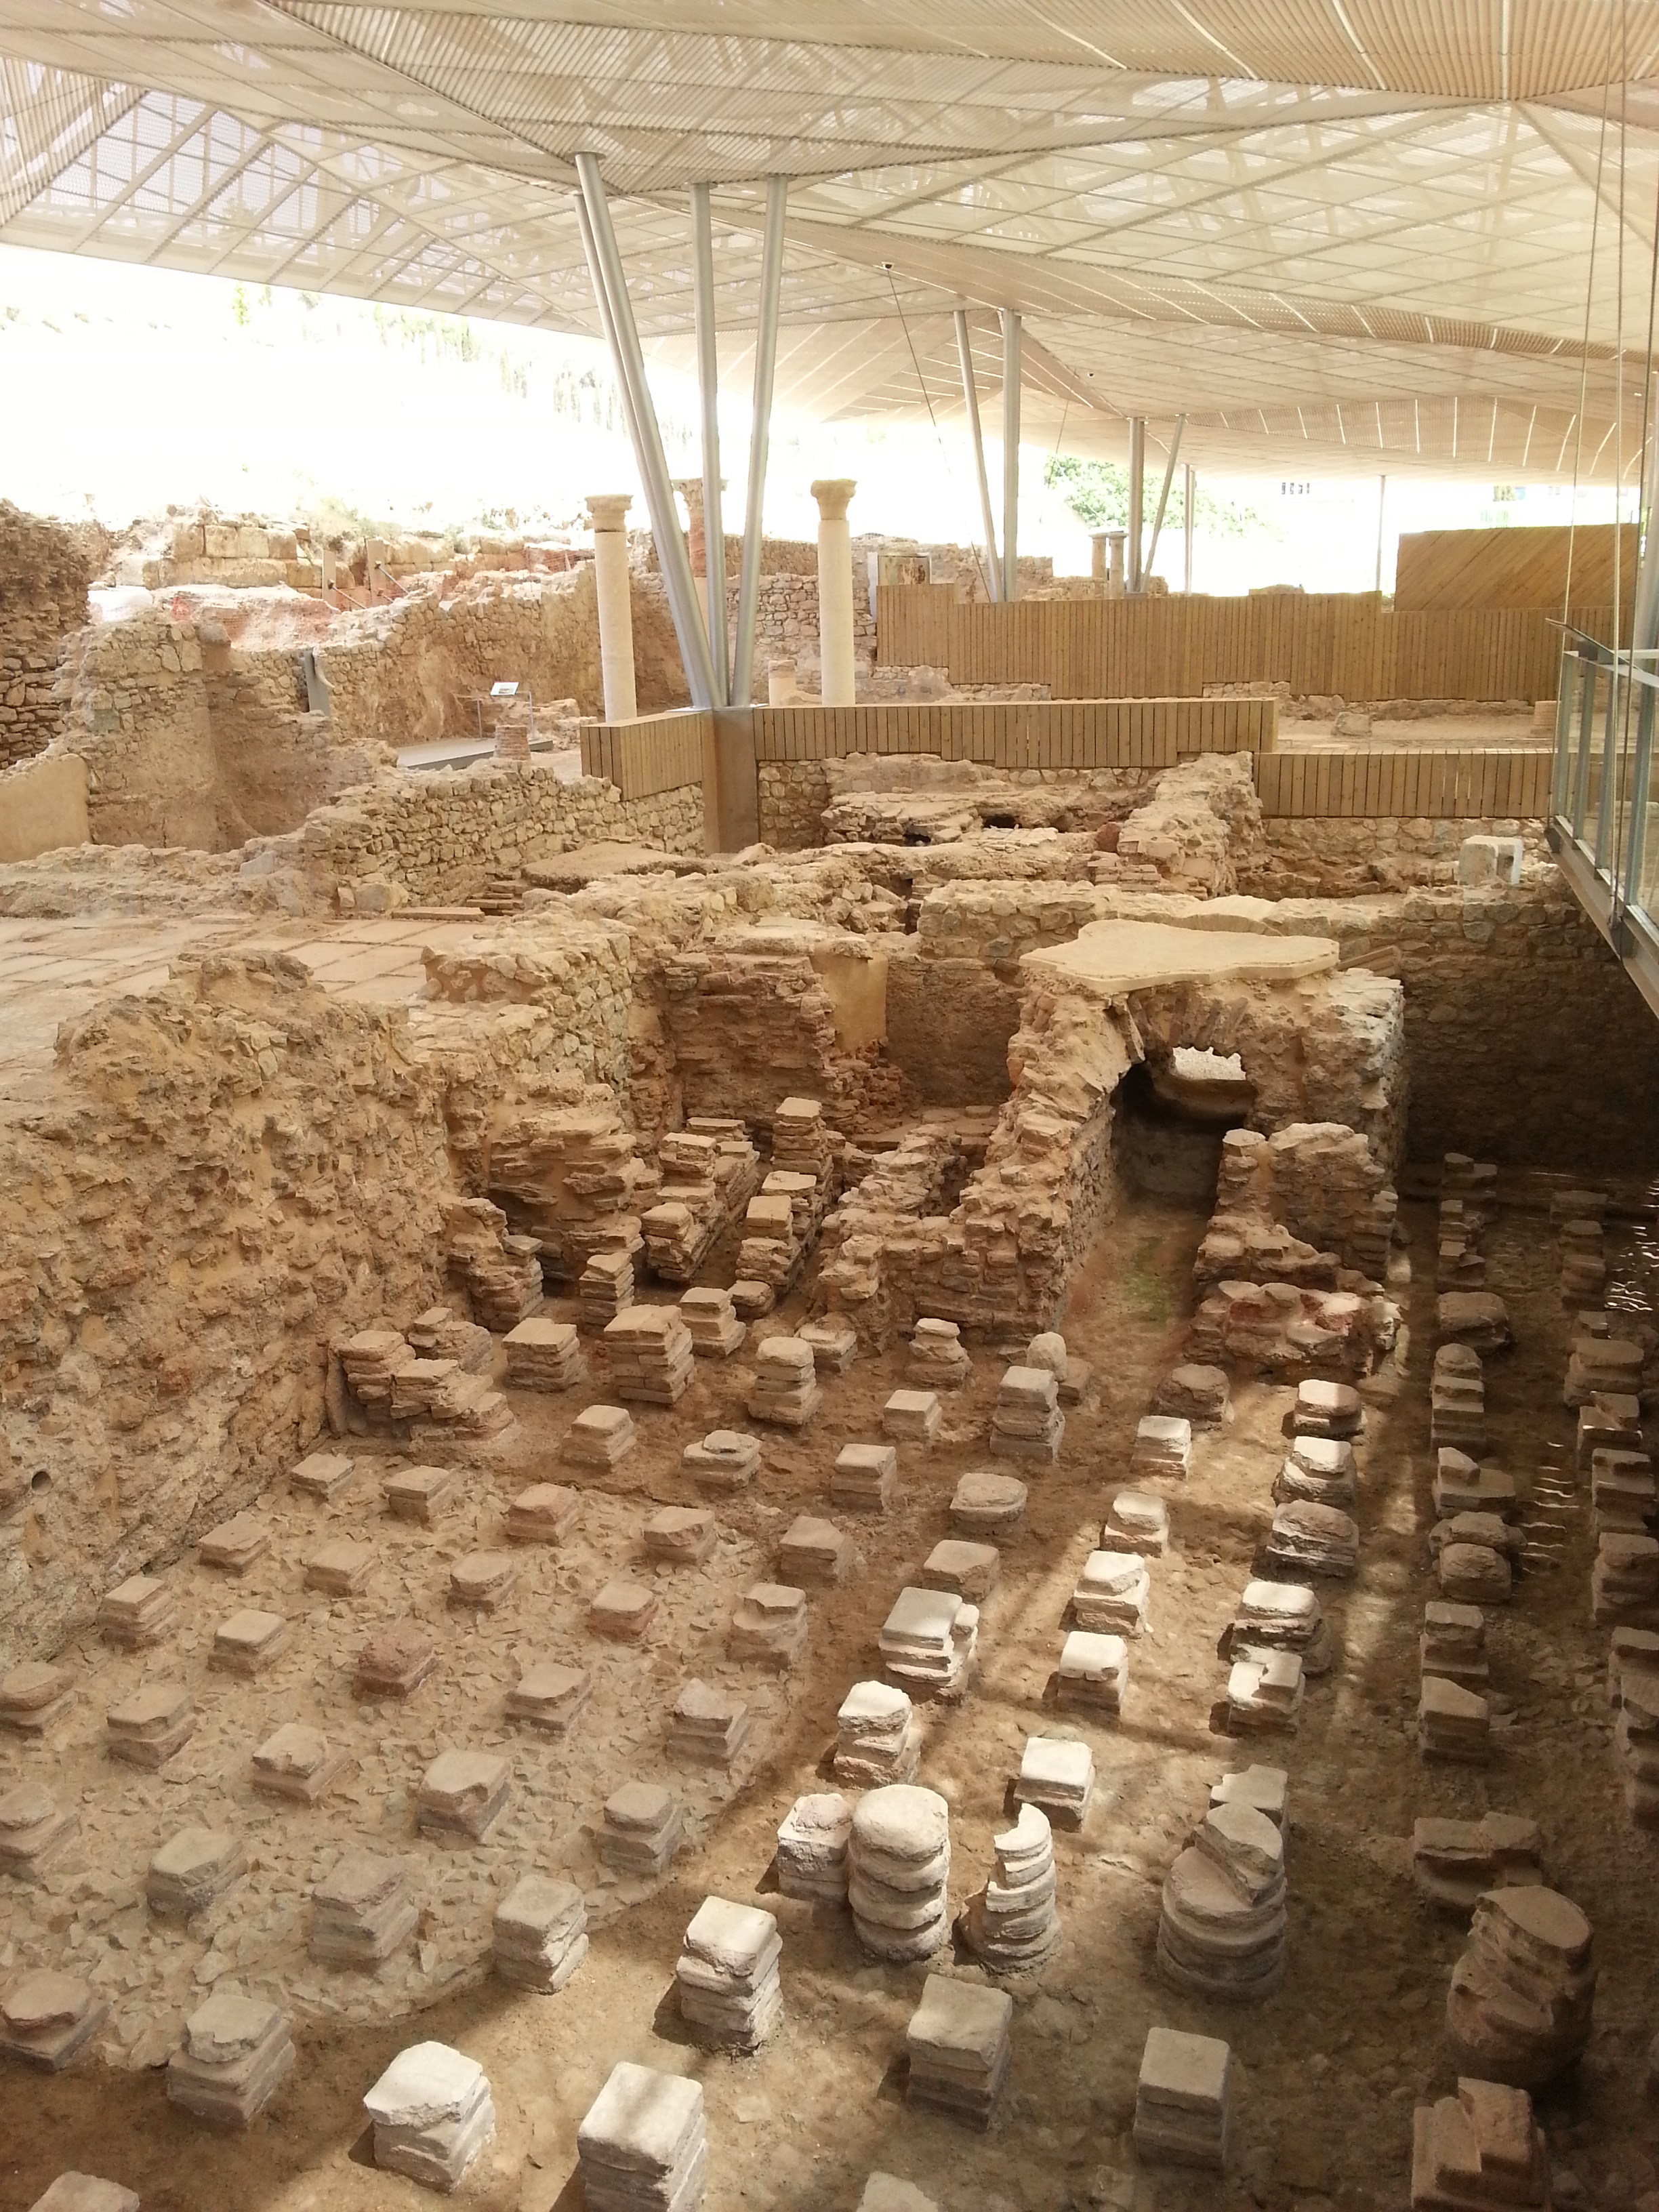 Ancient Roman baths still being excavated